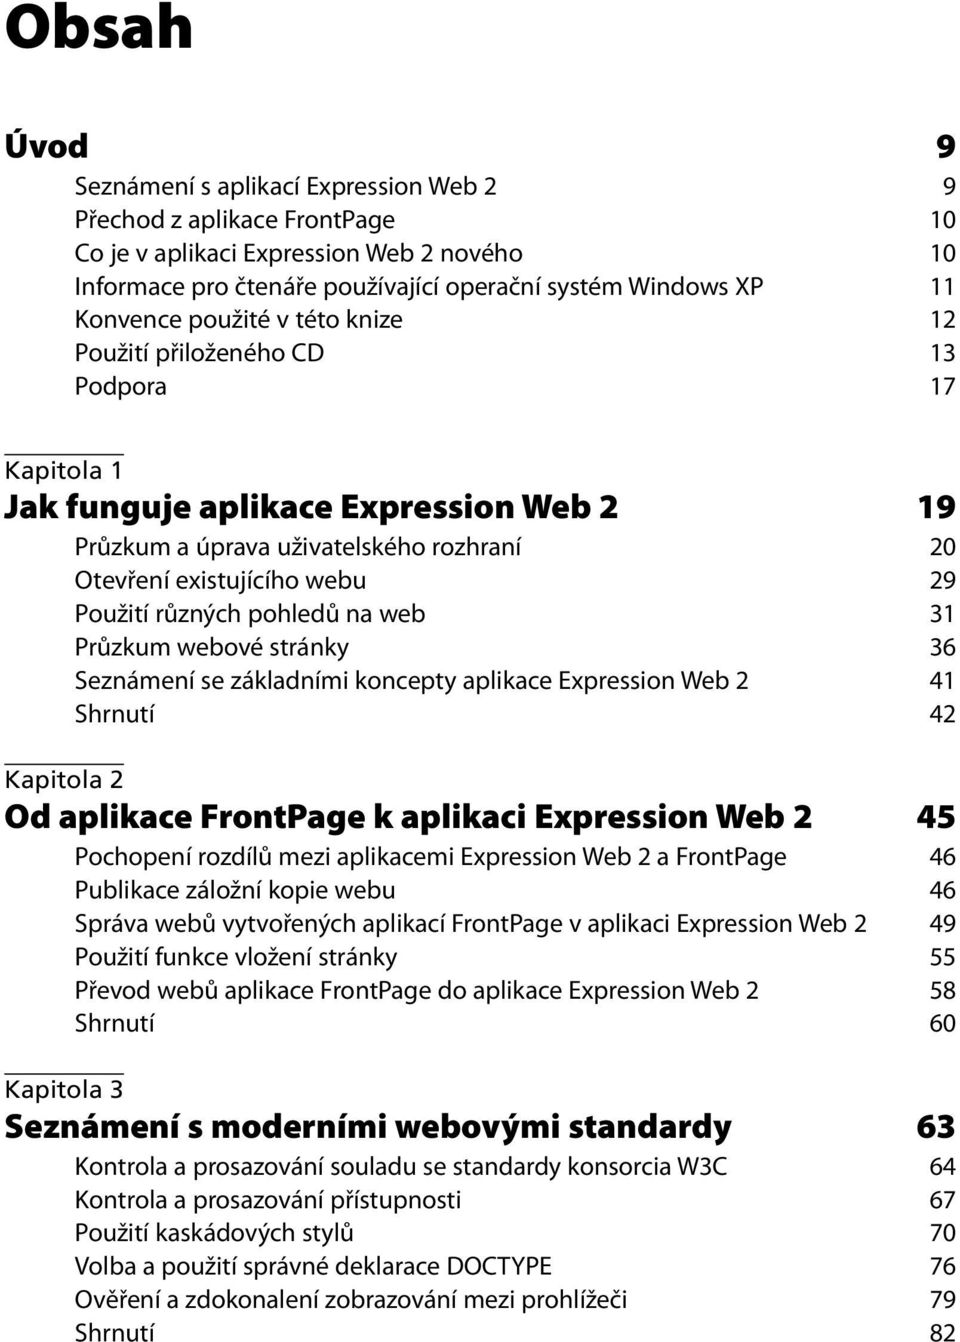 Použití různých pohledů na web 31 Průzkum webové stránky 36 Seznámení se základními koncepty aplikace Expression Web 2 41 Shrnutí 42 Kapitola 2 Od aplikace FrontPage k aplikaci Expression Web 2 45